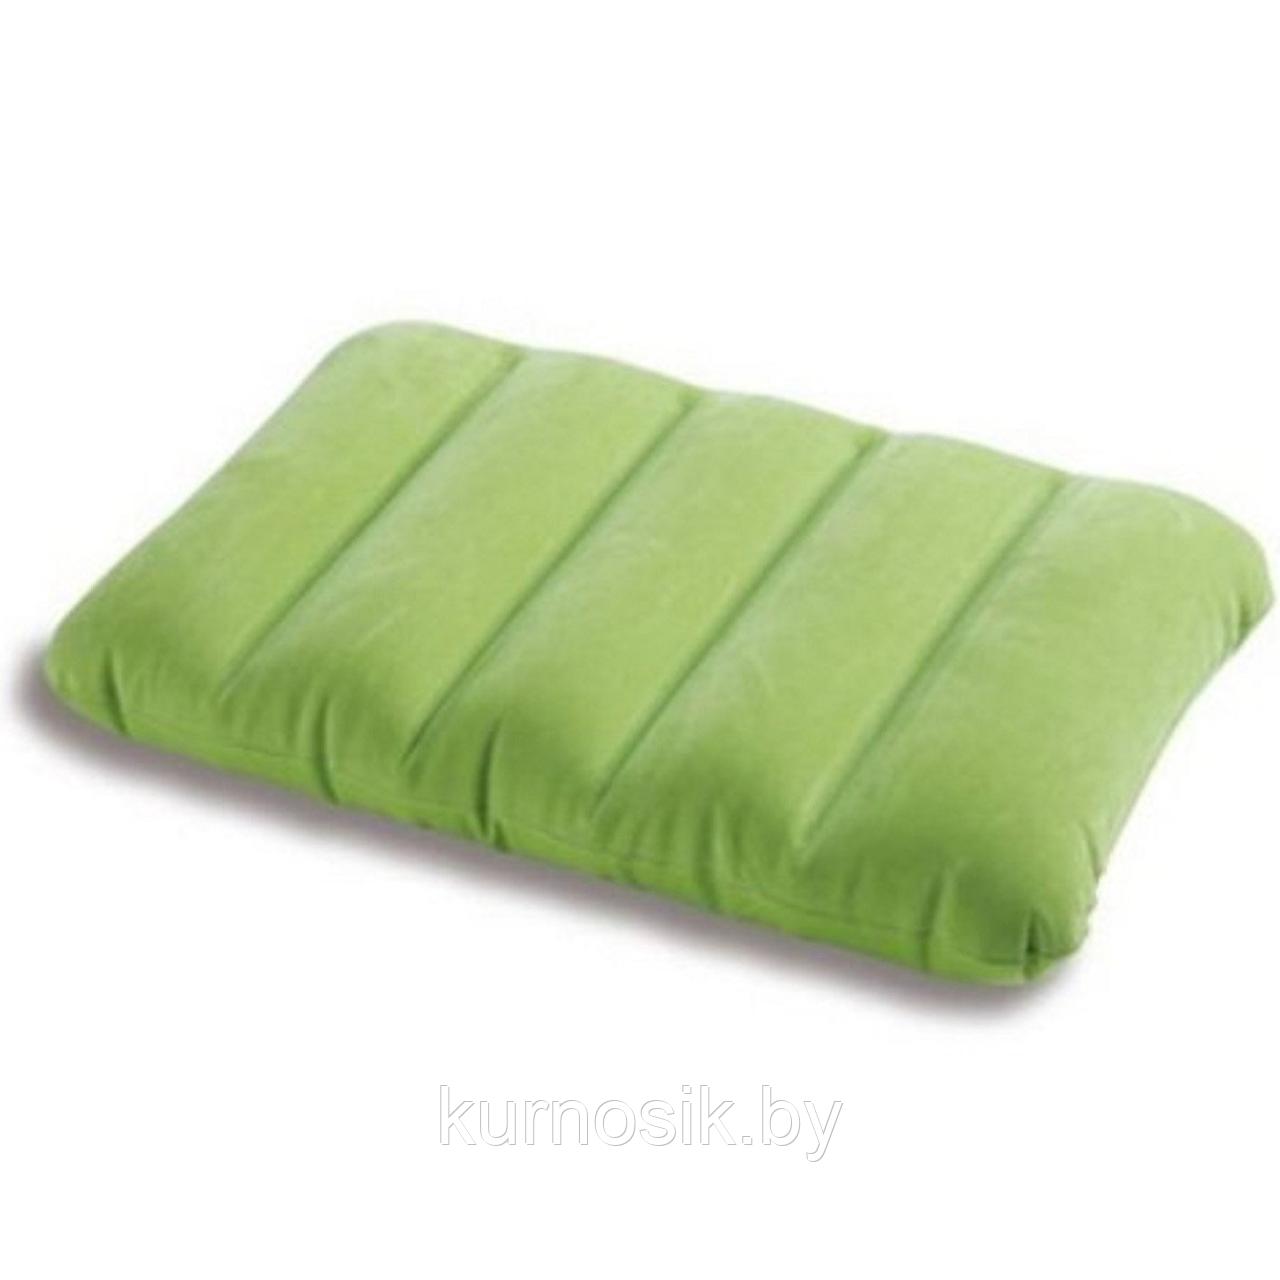 Надувная подушка Intex Kidz Pillows  в ассортименте (68676)